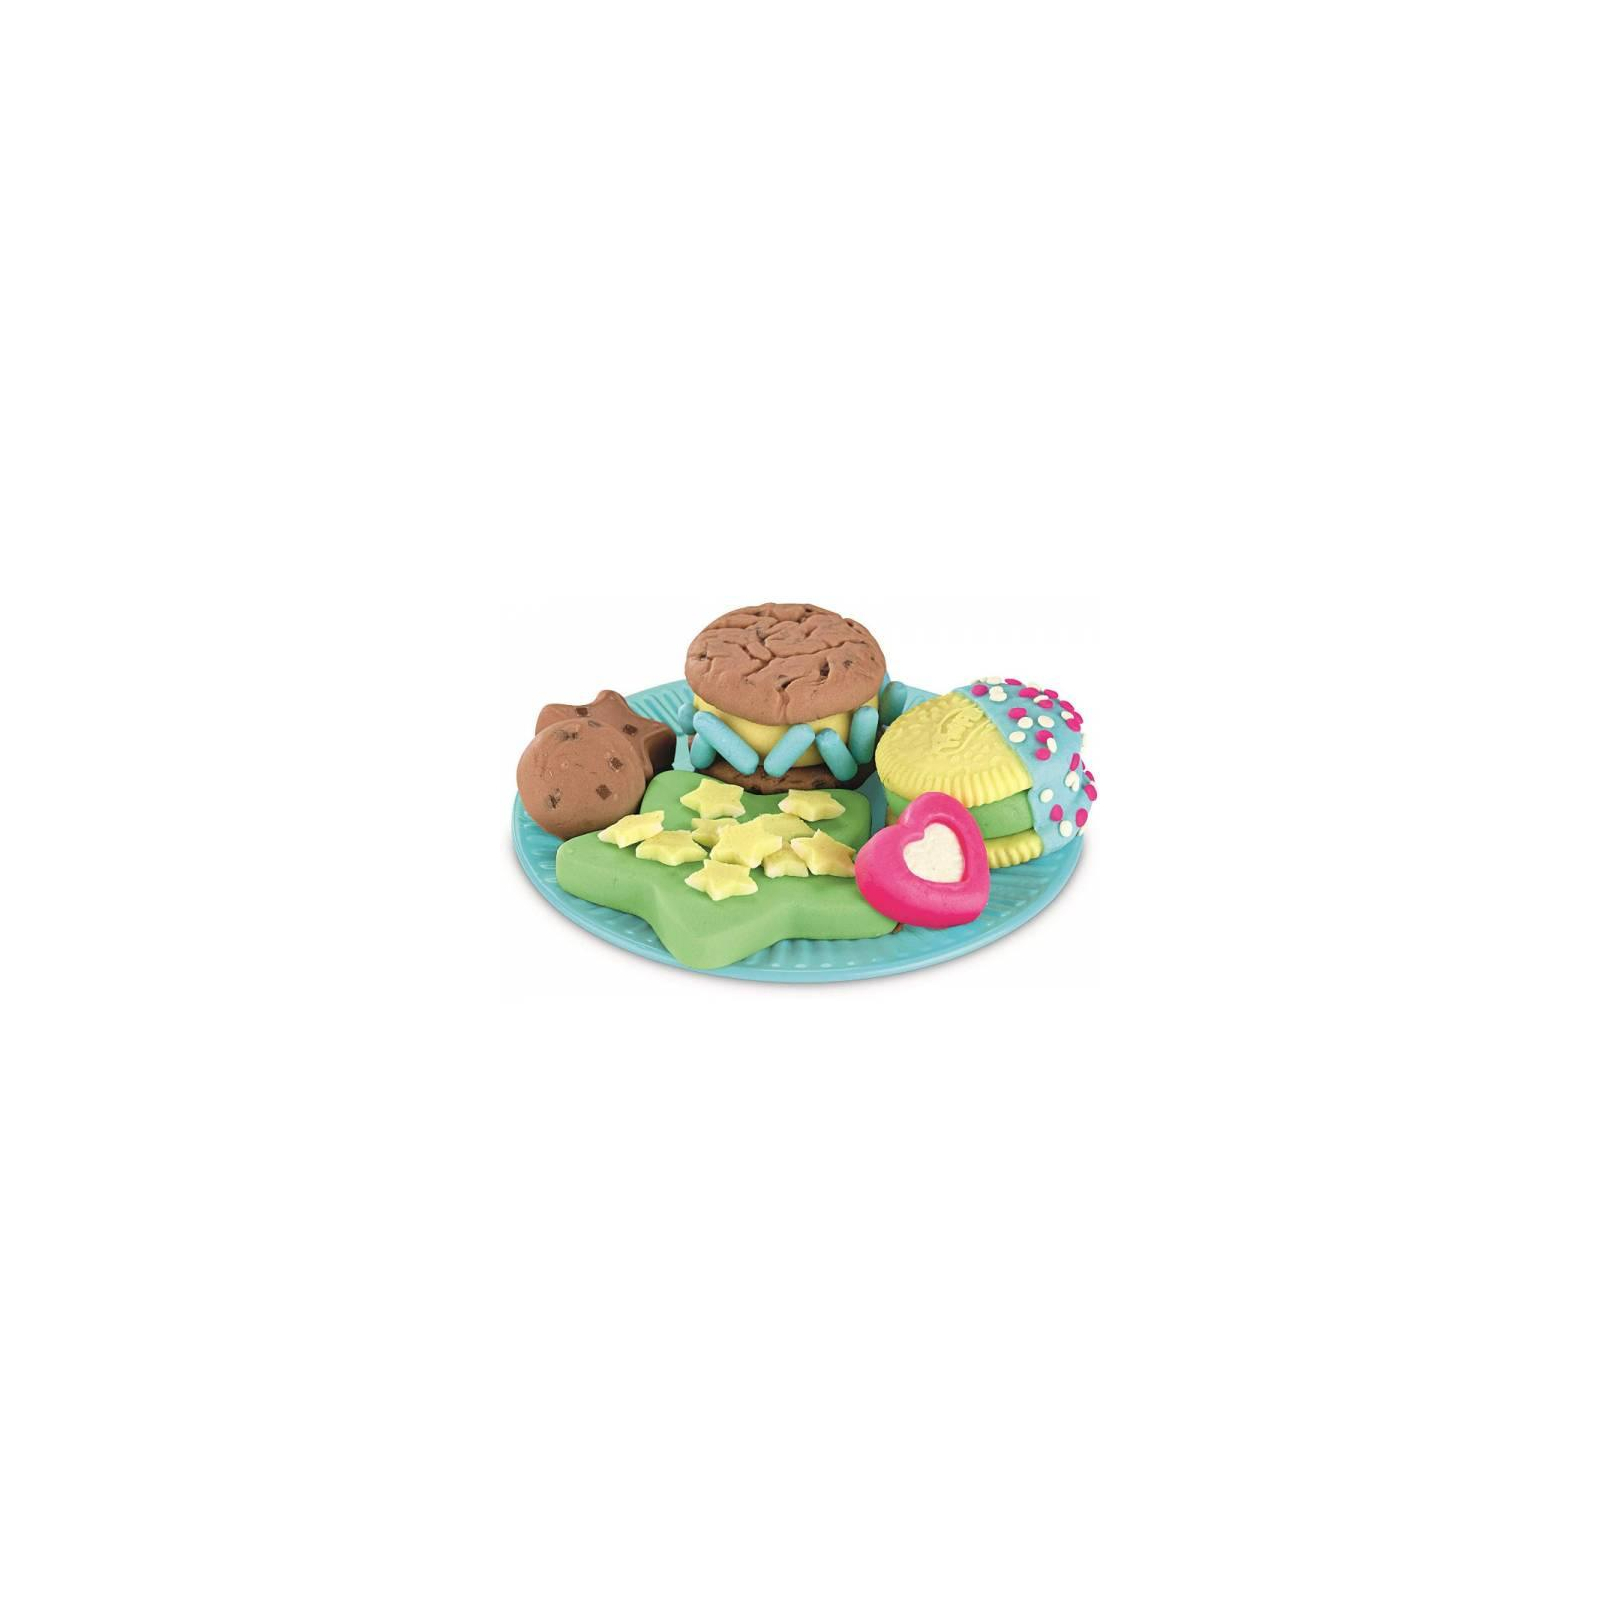 Набор для творчества Hasbro Play-Doh Набор печенья с молоком (E5471) изображение 4